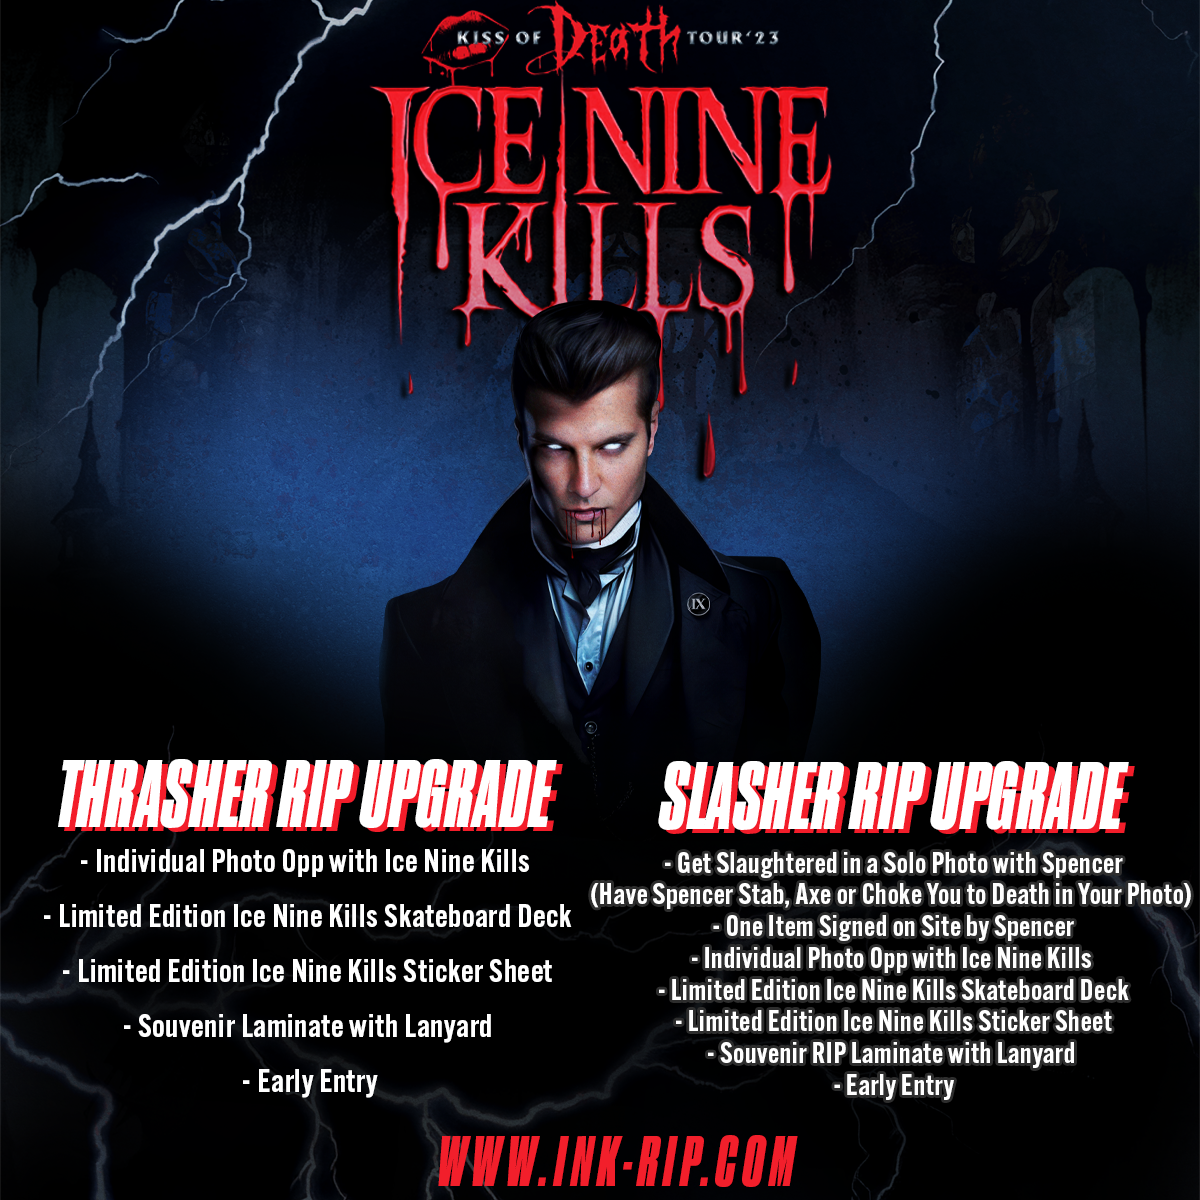 Ice Nine Kills' Kiss of Death Tour